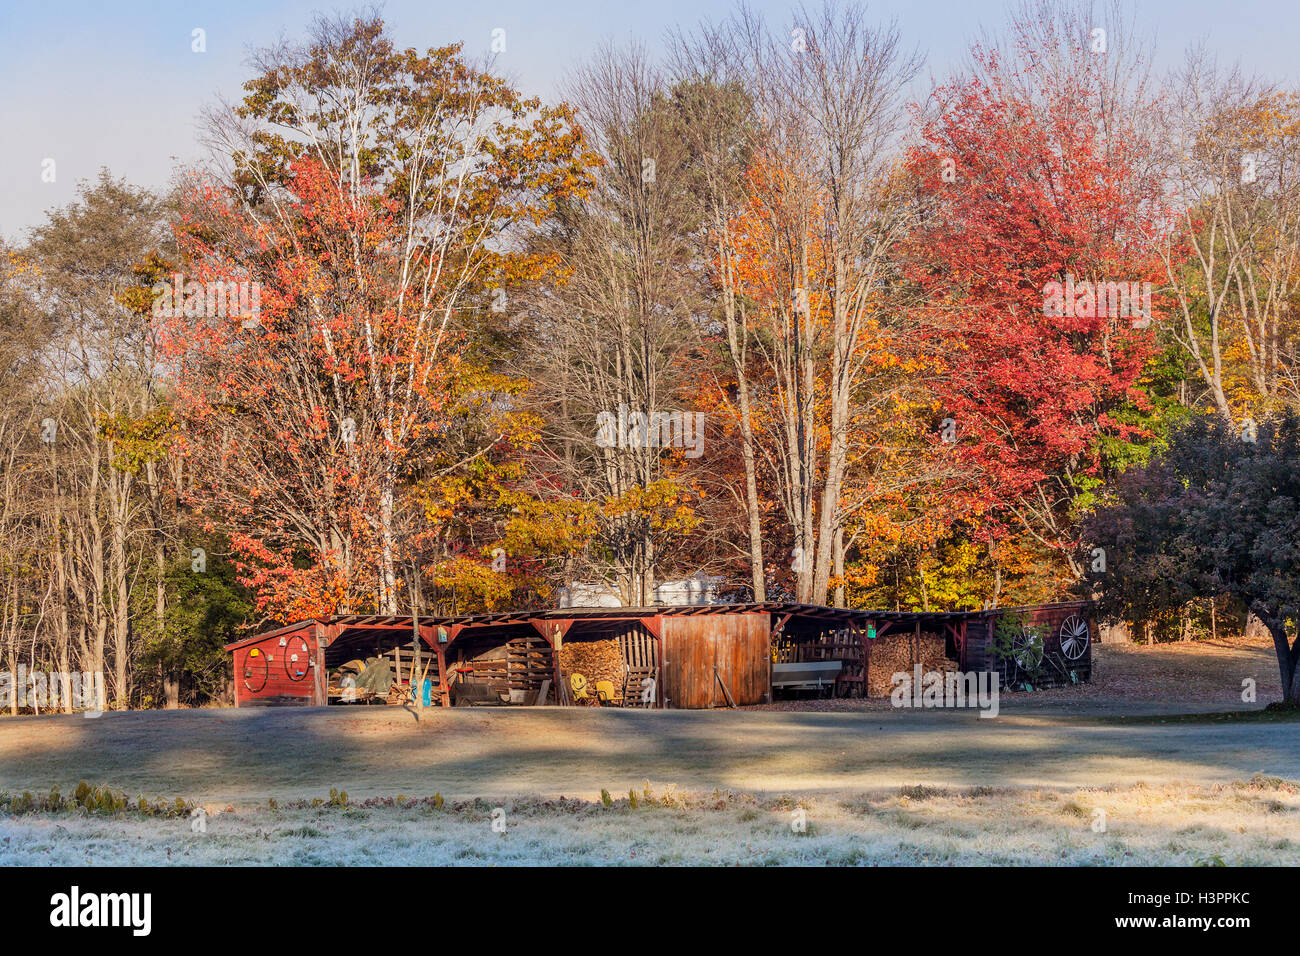 Landschaftlich eine Scheune voller Farmelemente und Heizung Brennholz, buntes Herbstlaub und Frost auf dem Boden im winter Stockfoto